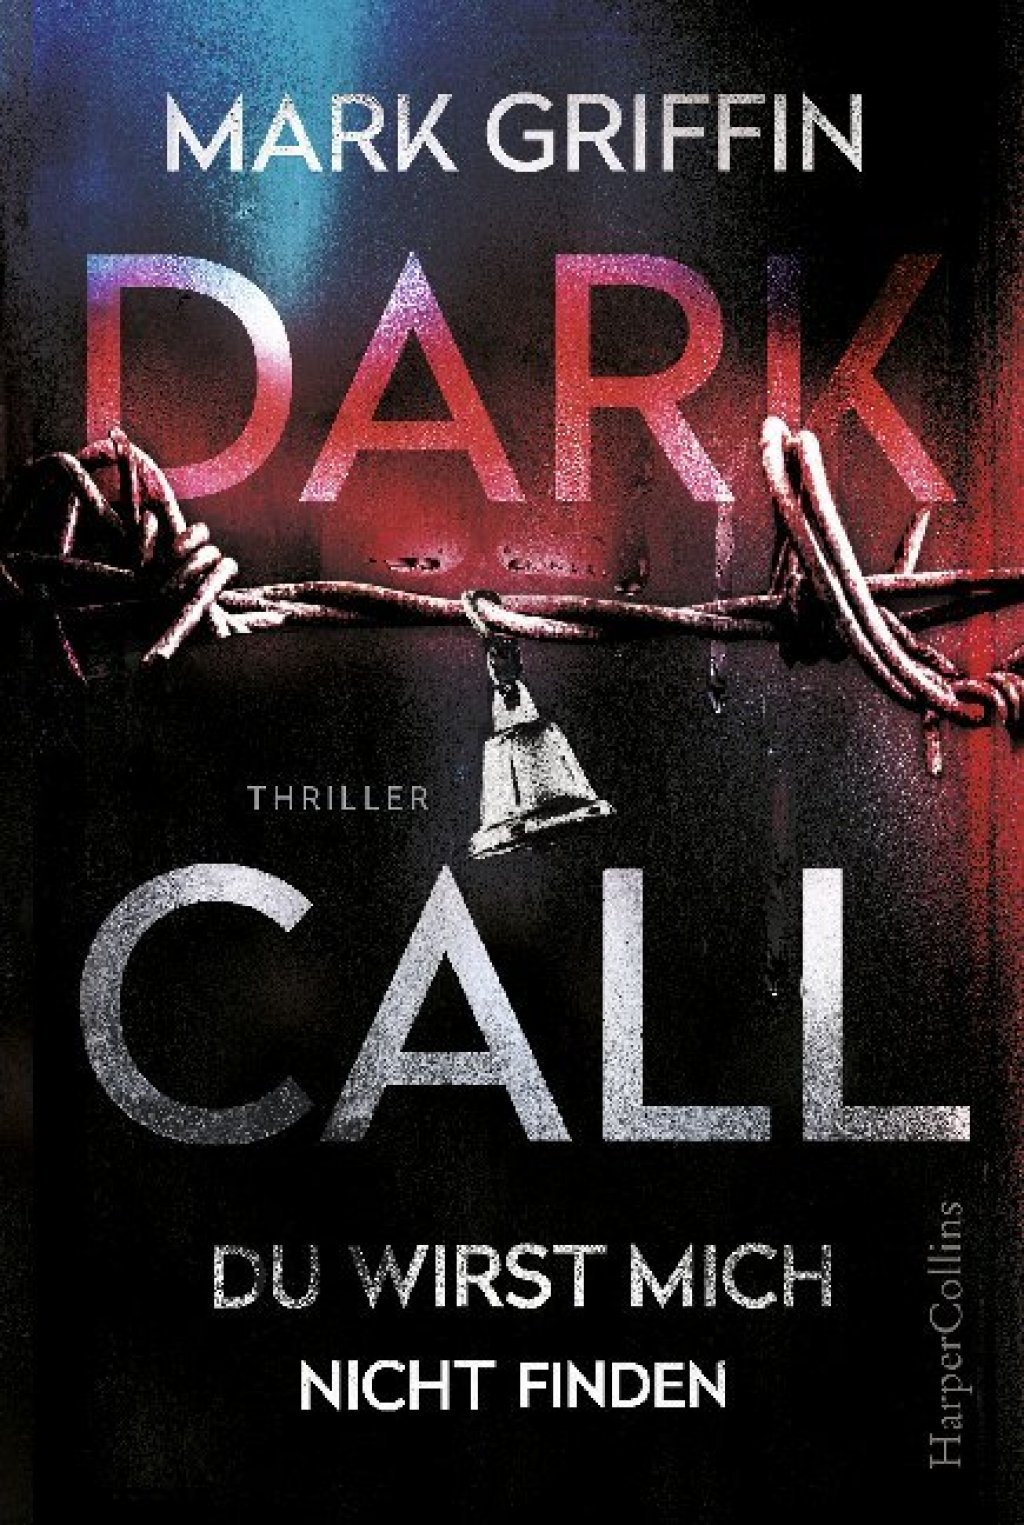 Dark Call - Du wirst mich nicht finden Holly Wakefield # 1